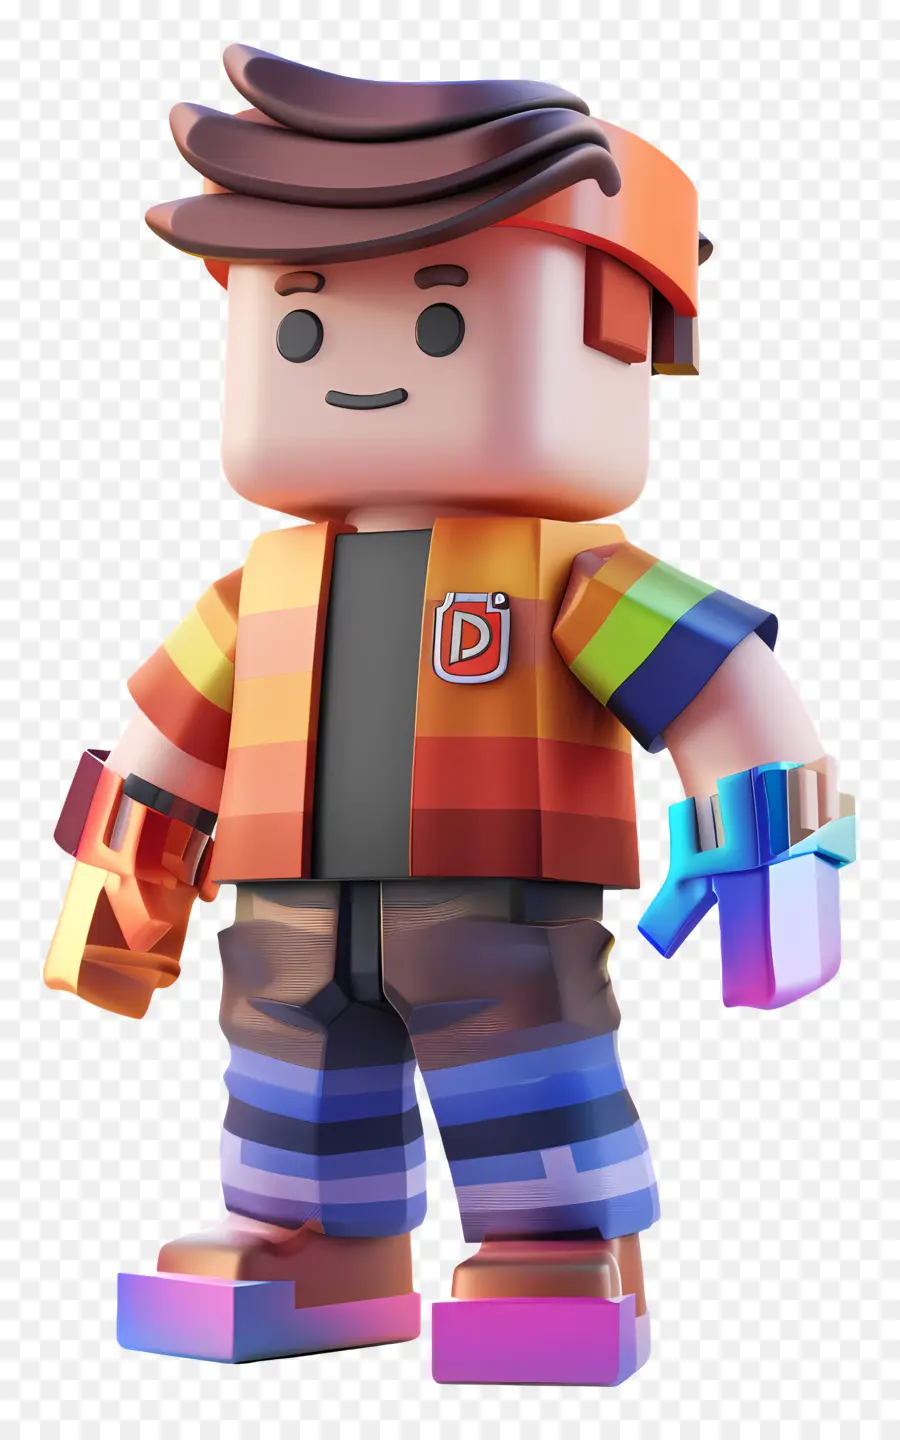 Roblox Boy Lego Mini Figur farbenfrohe Rüstung - Farbenfrohe Lego -Person mit Bart, Rüstung, Personal